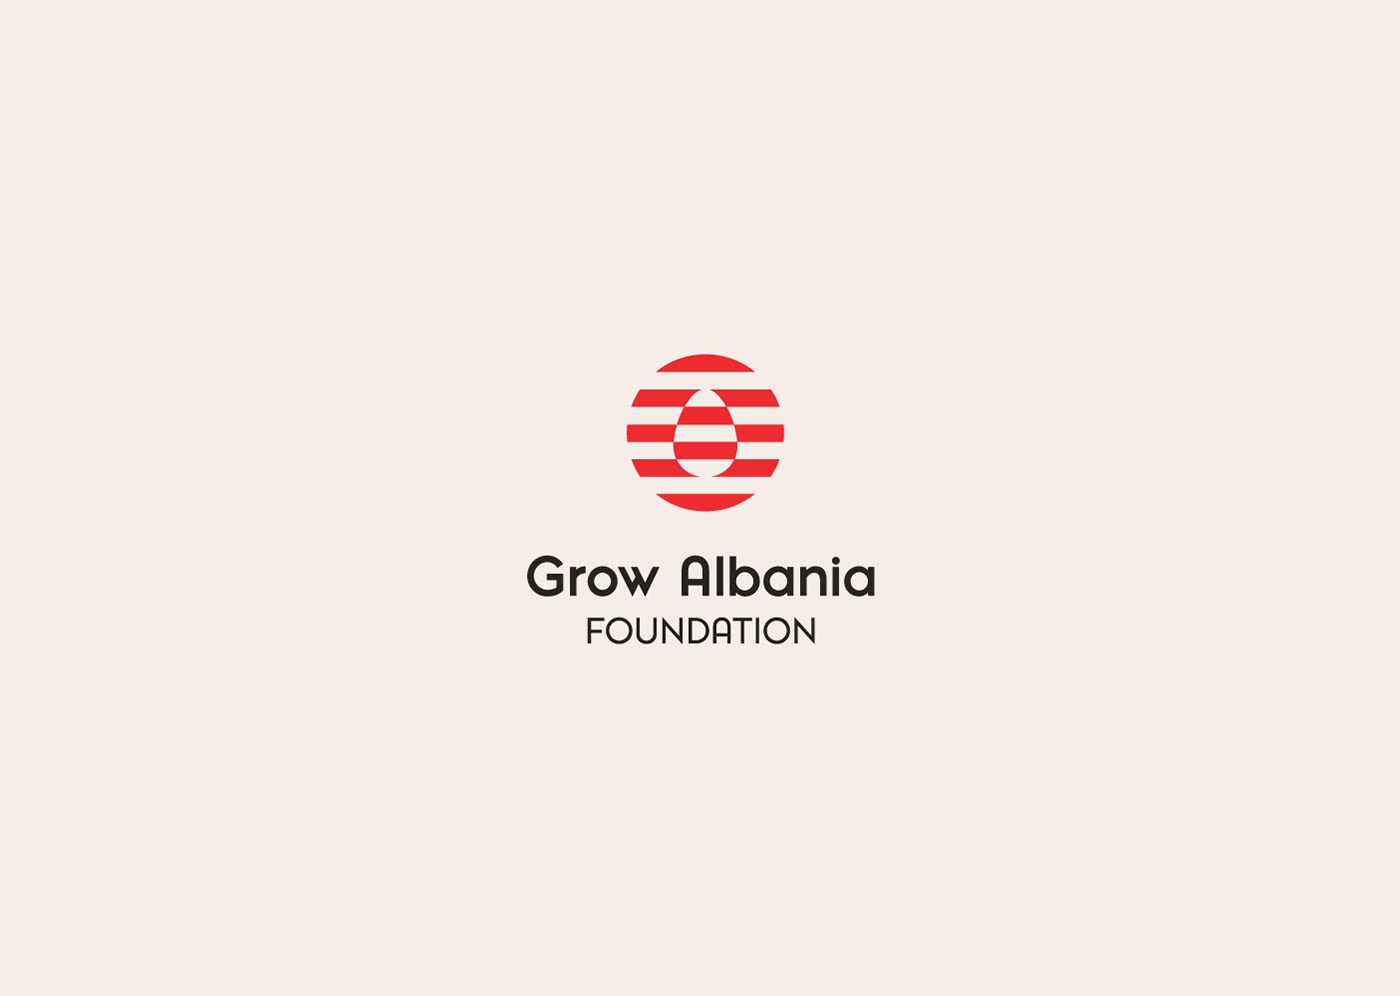 AGI agihaxhimuratillc Albania brand branding  foundation grow Haxhimurati identity Tirana